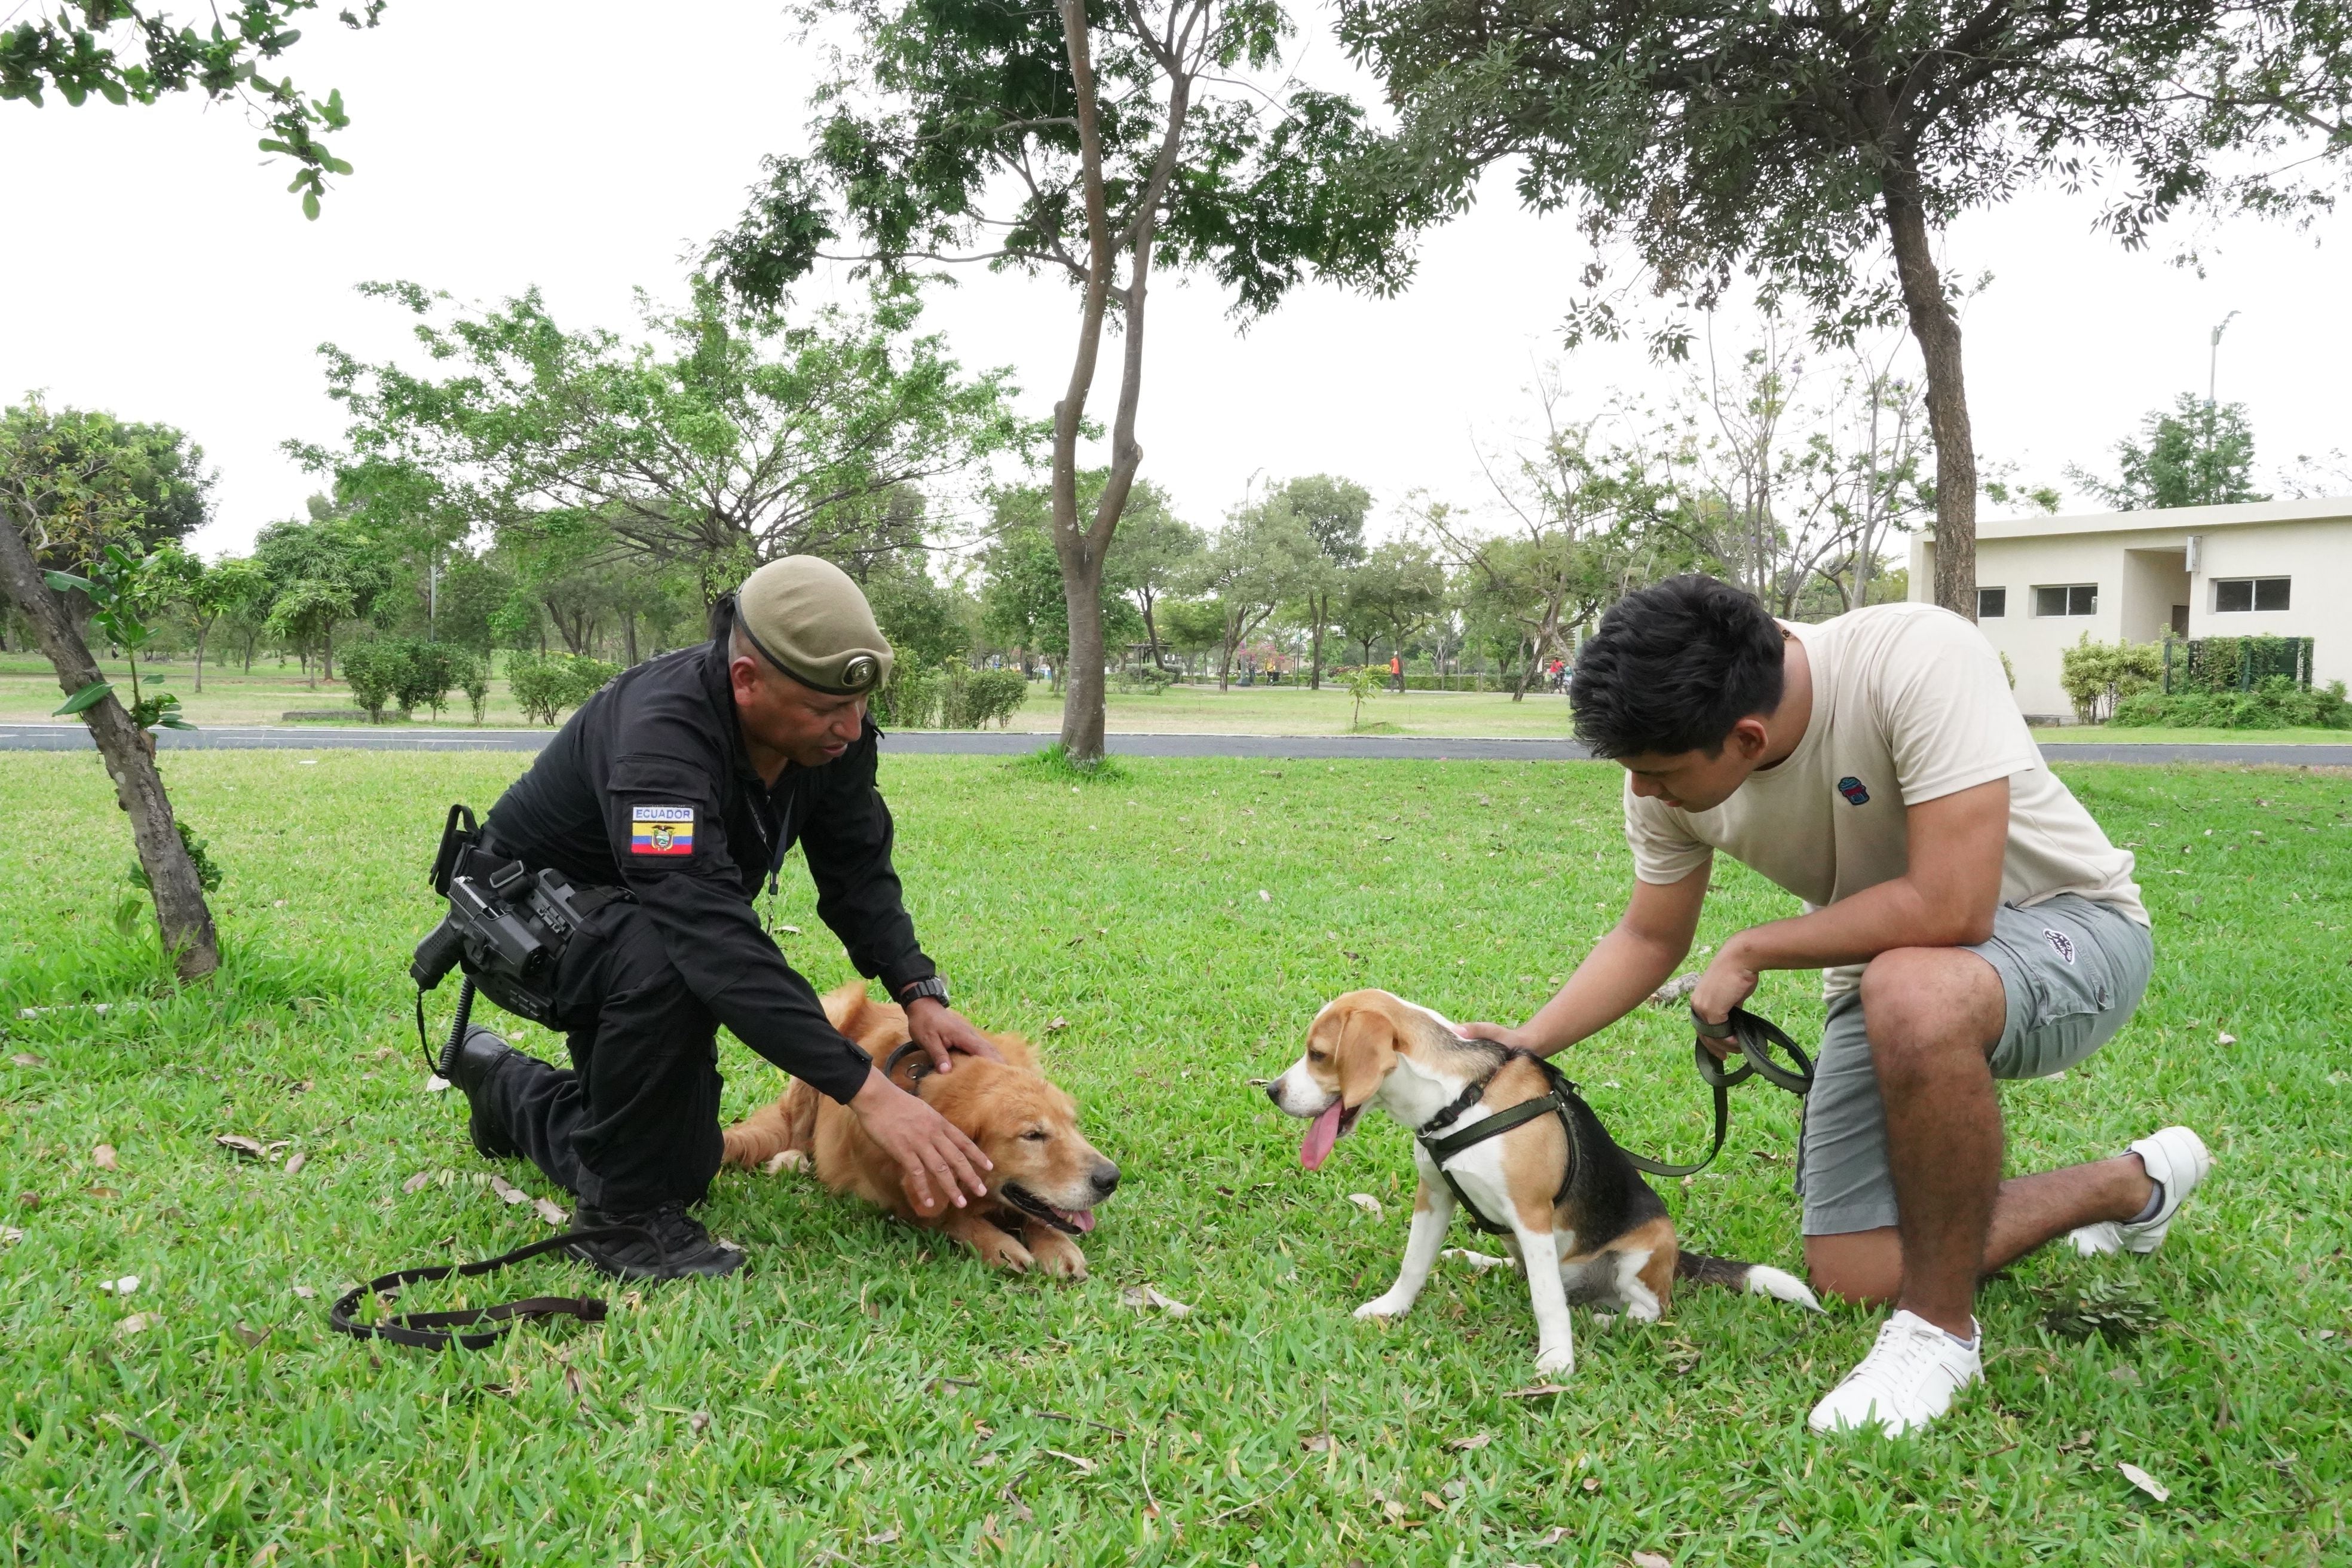 Zamora estrena un superparque canino 'Agility' para los perros